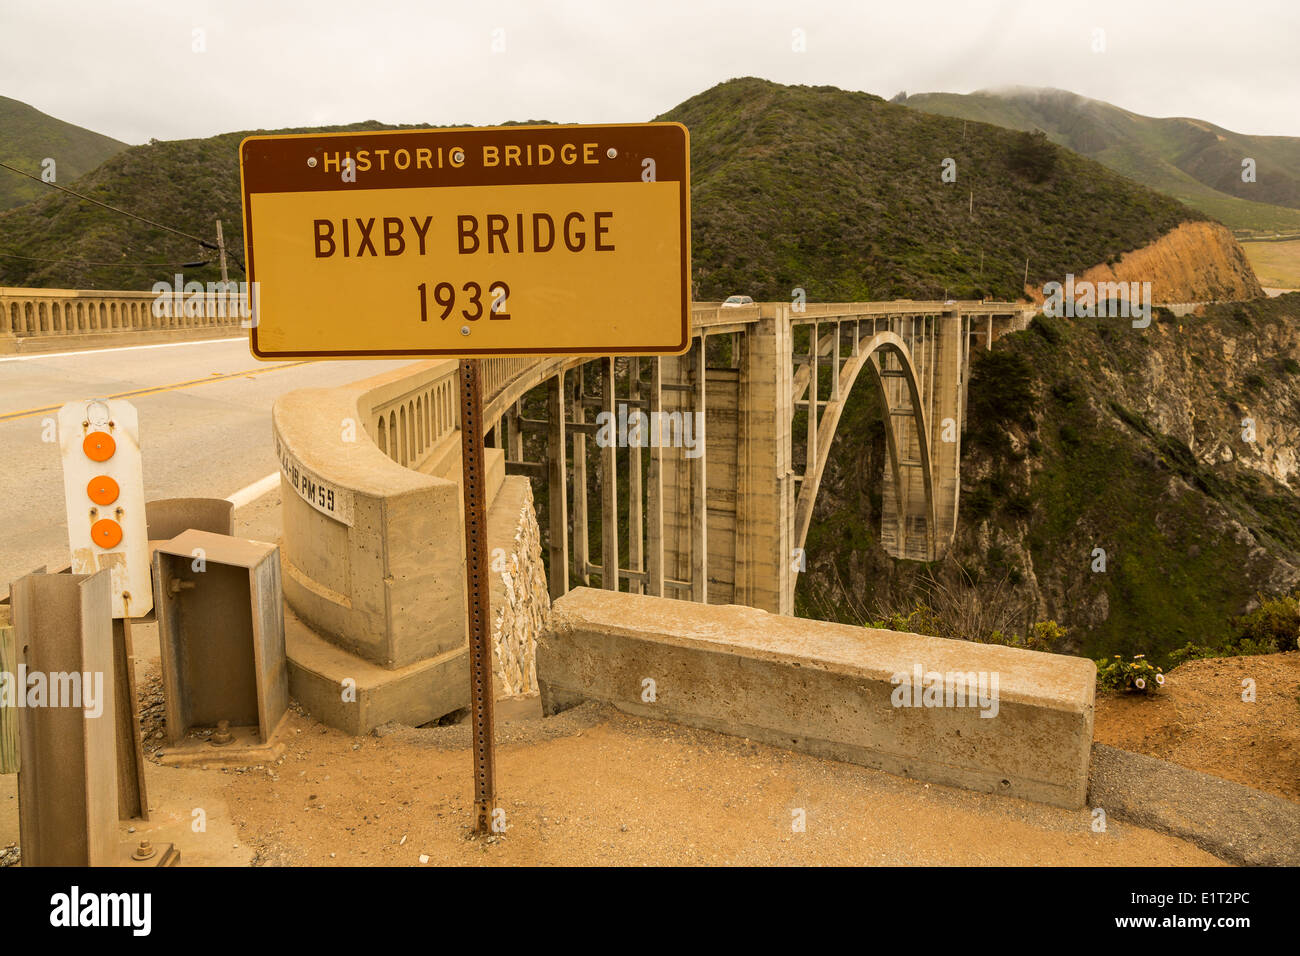 Bixby Bridge, la Route 1, Big Sur, en Californie, dans la lumière du soir. Construit en 1932. Banque D'Images